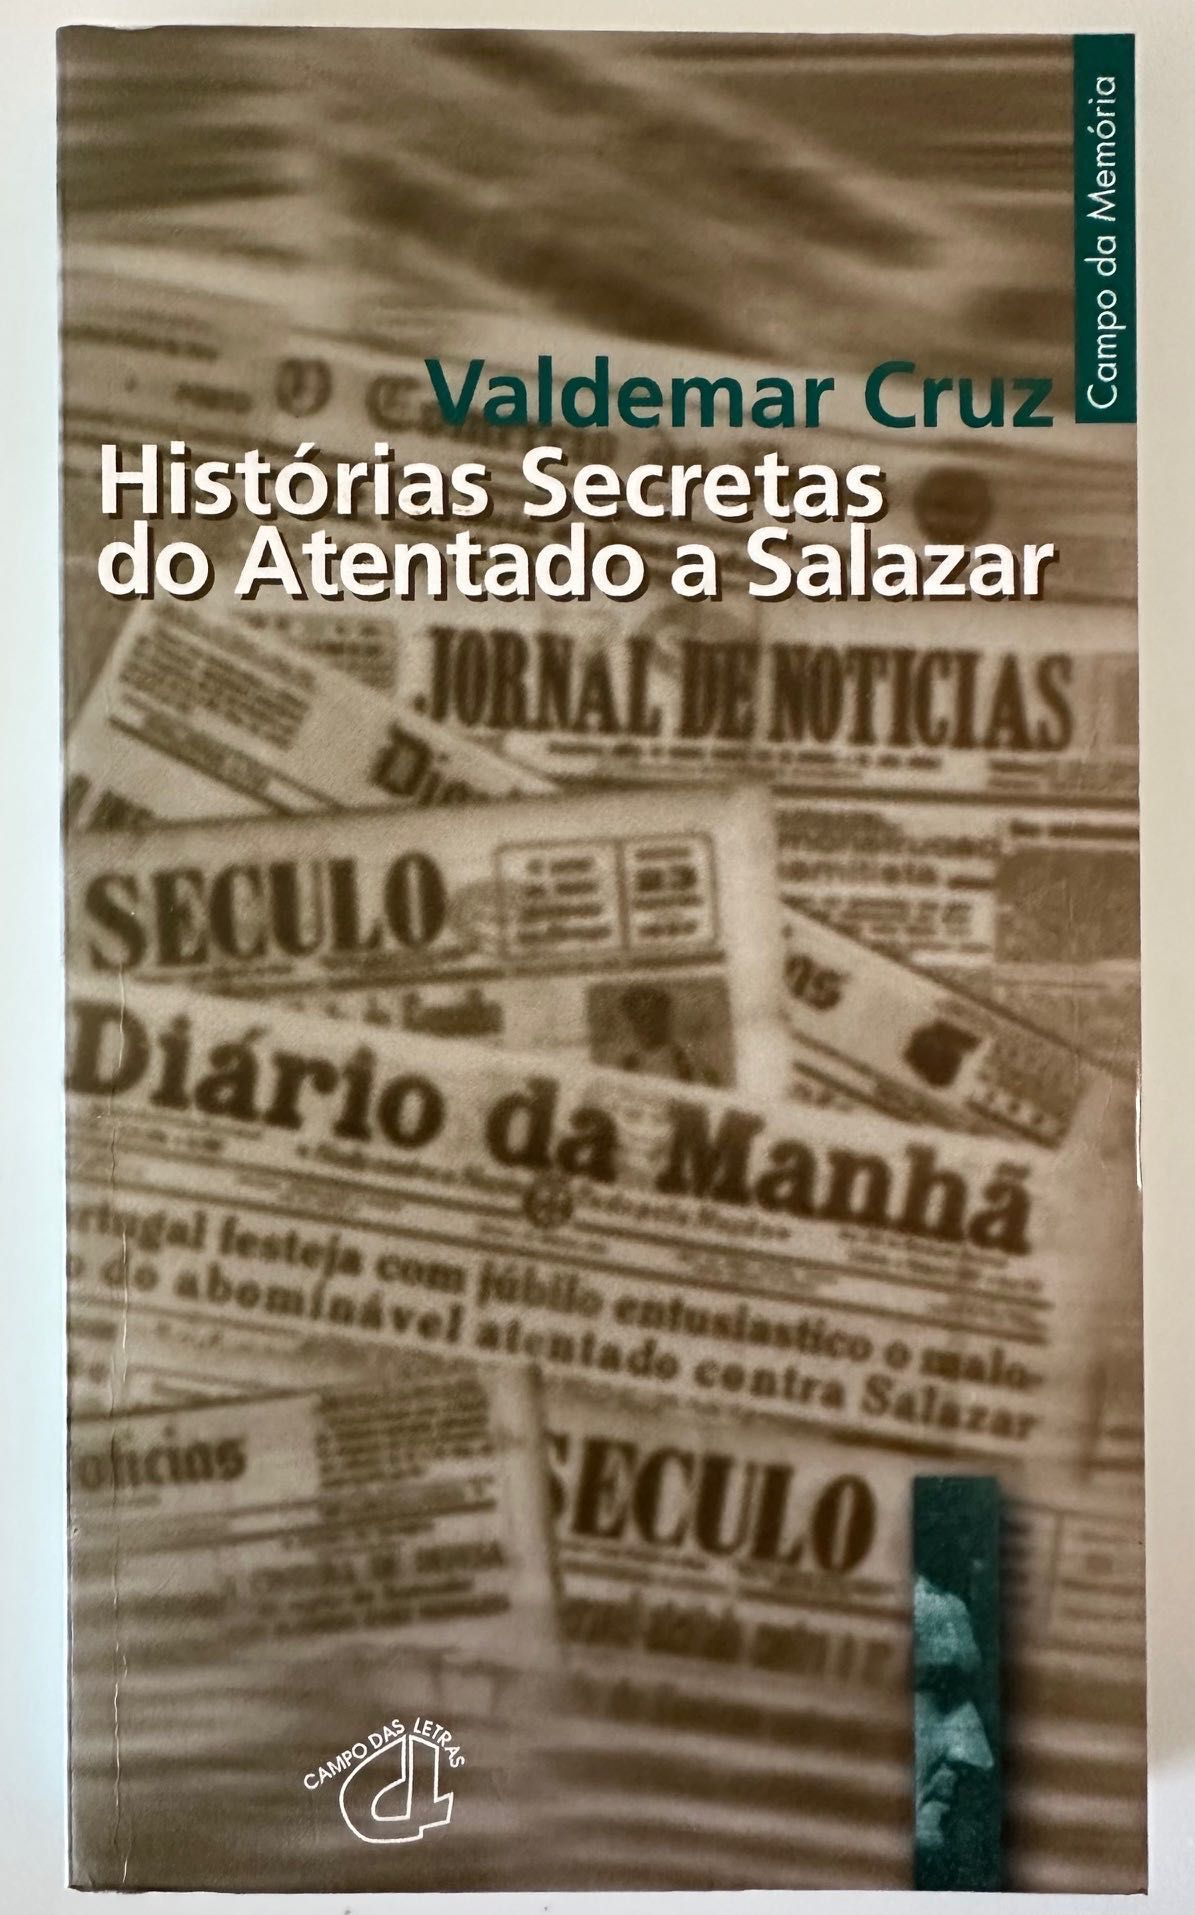 Histórias Secretas do Atentado a Salazar - Valdemar Cruz - 1999